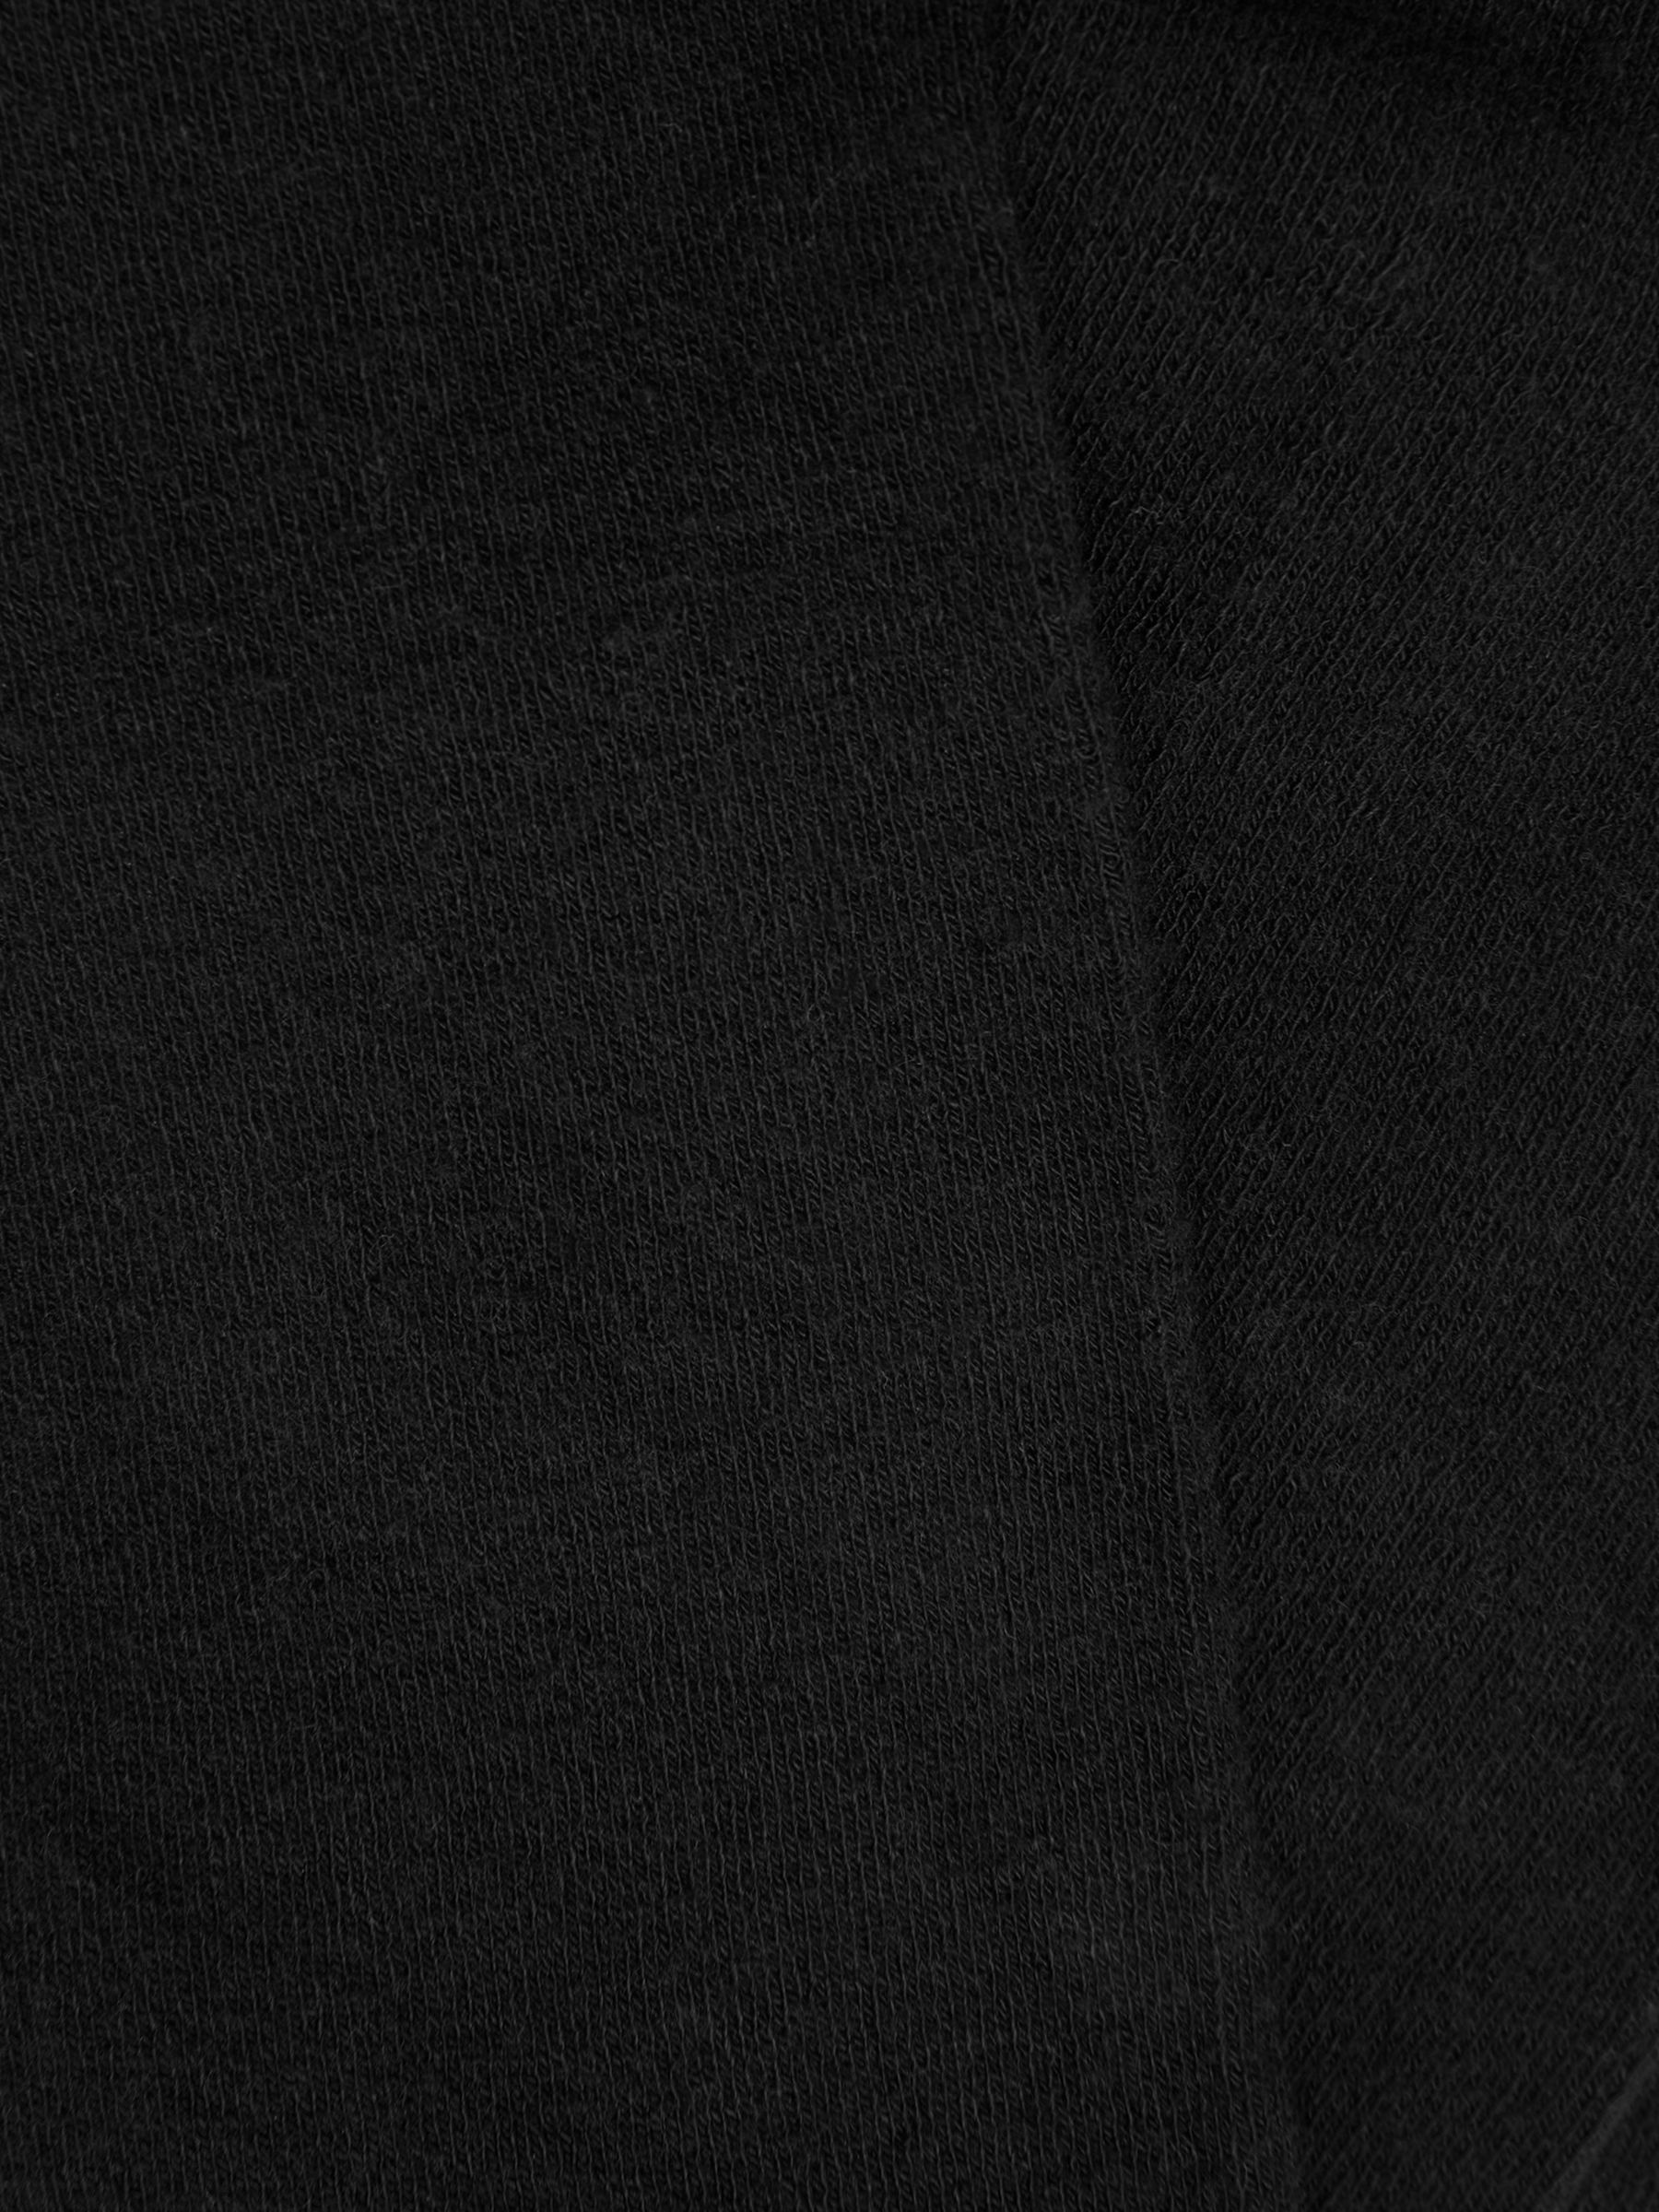 John Lewis 270 Denier Opaque Wool Blend Tights, Black at John Lewis ...